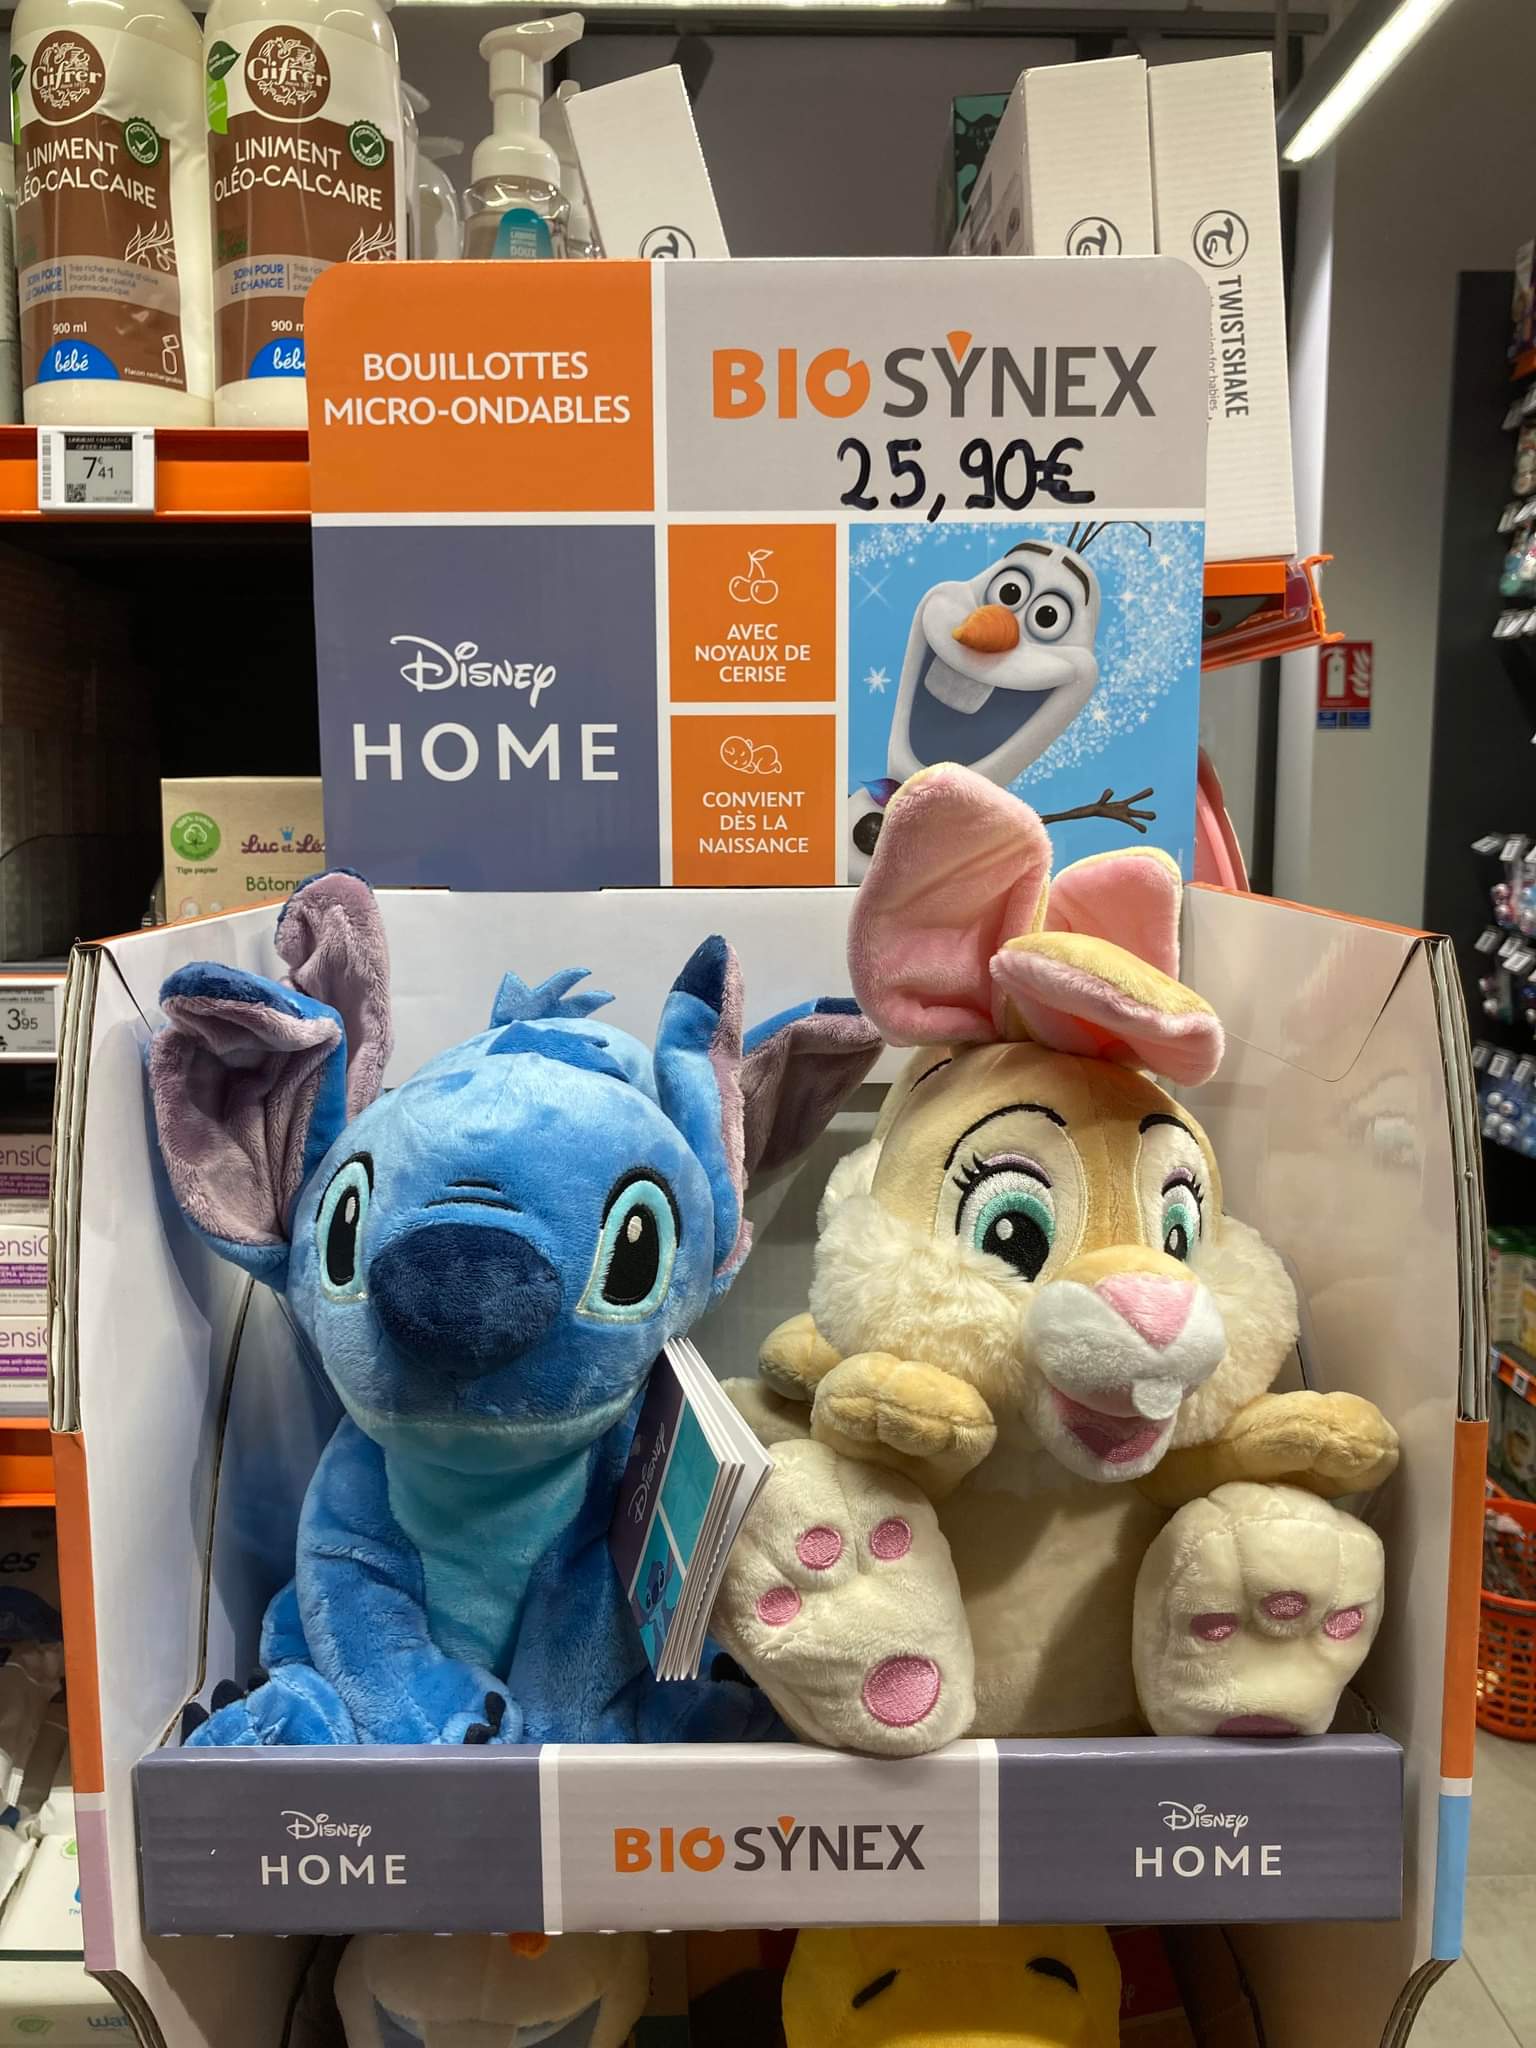 Disneyphile on X: Petites trouvailles en pharmacie, ces adorables  bouillottes peluches Disney de Biosynex.  / X